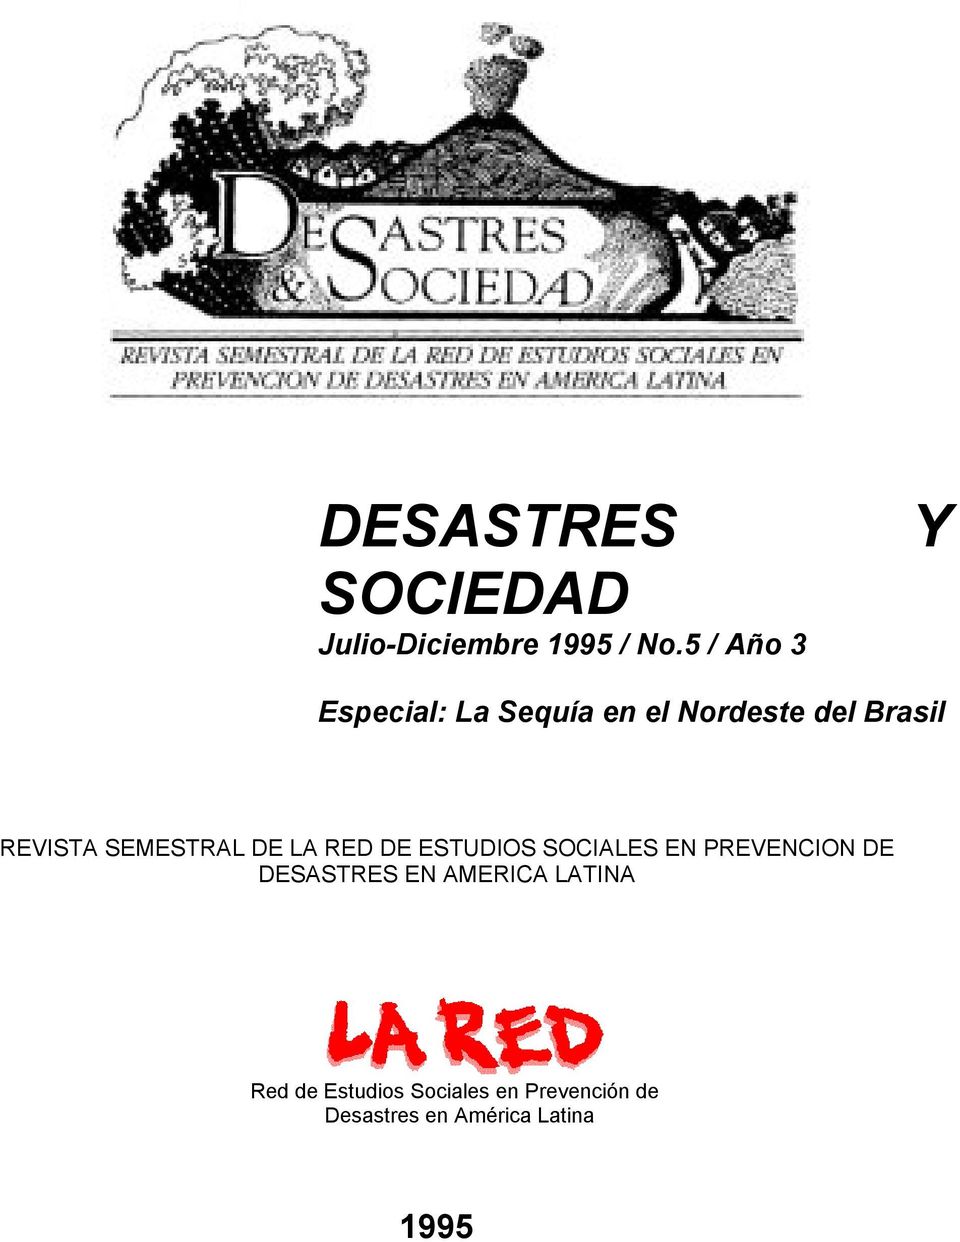 SEMESTRAL DE LA RED DE ESTUDIOS SOCIALES EN PREVENCION DE DESASTRES